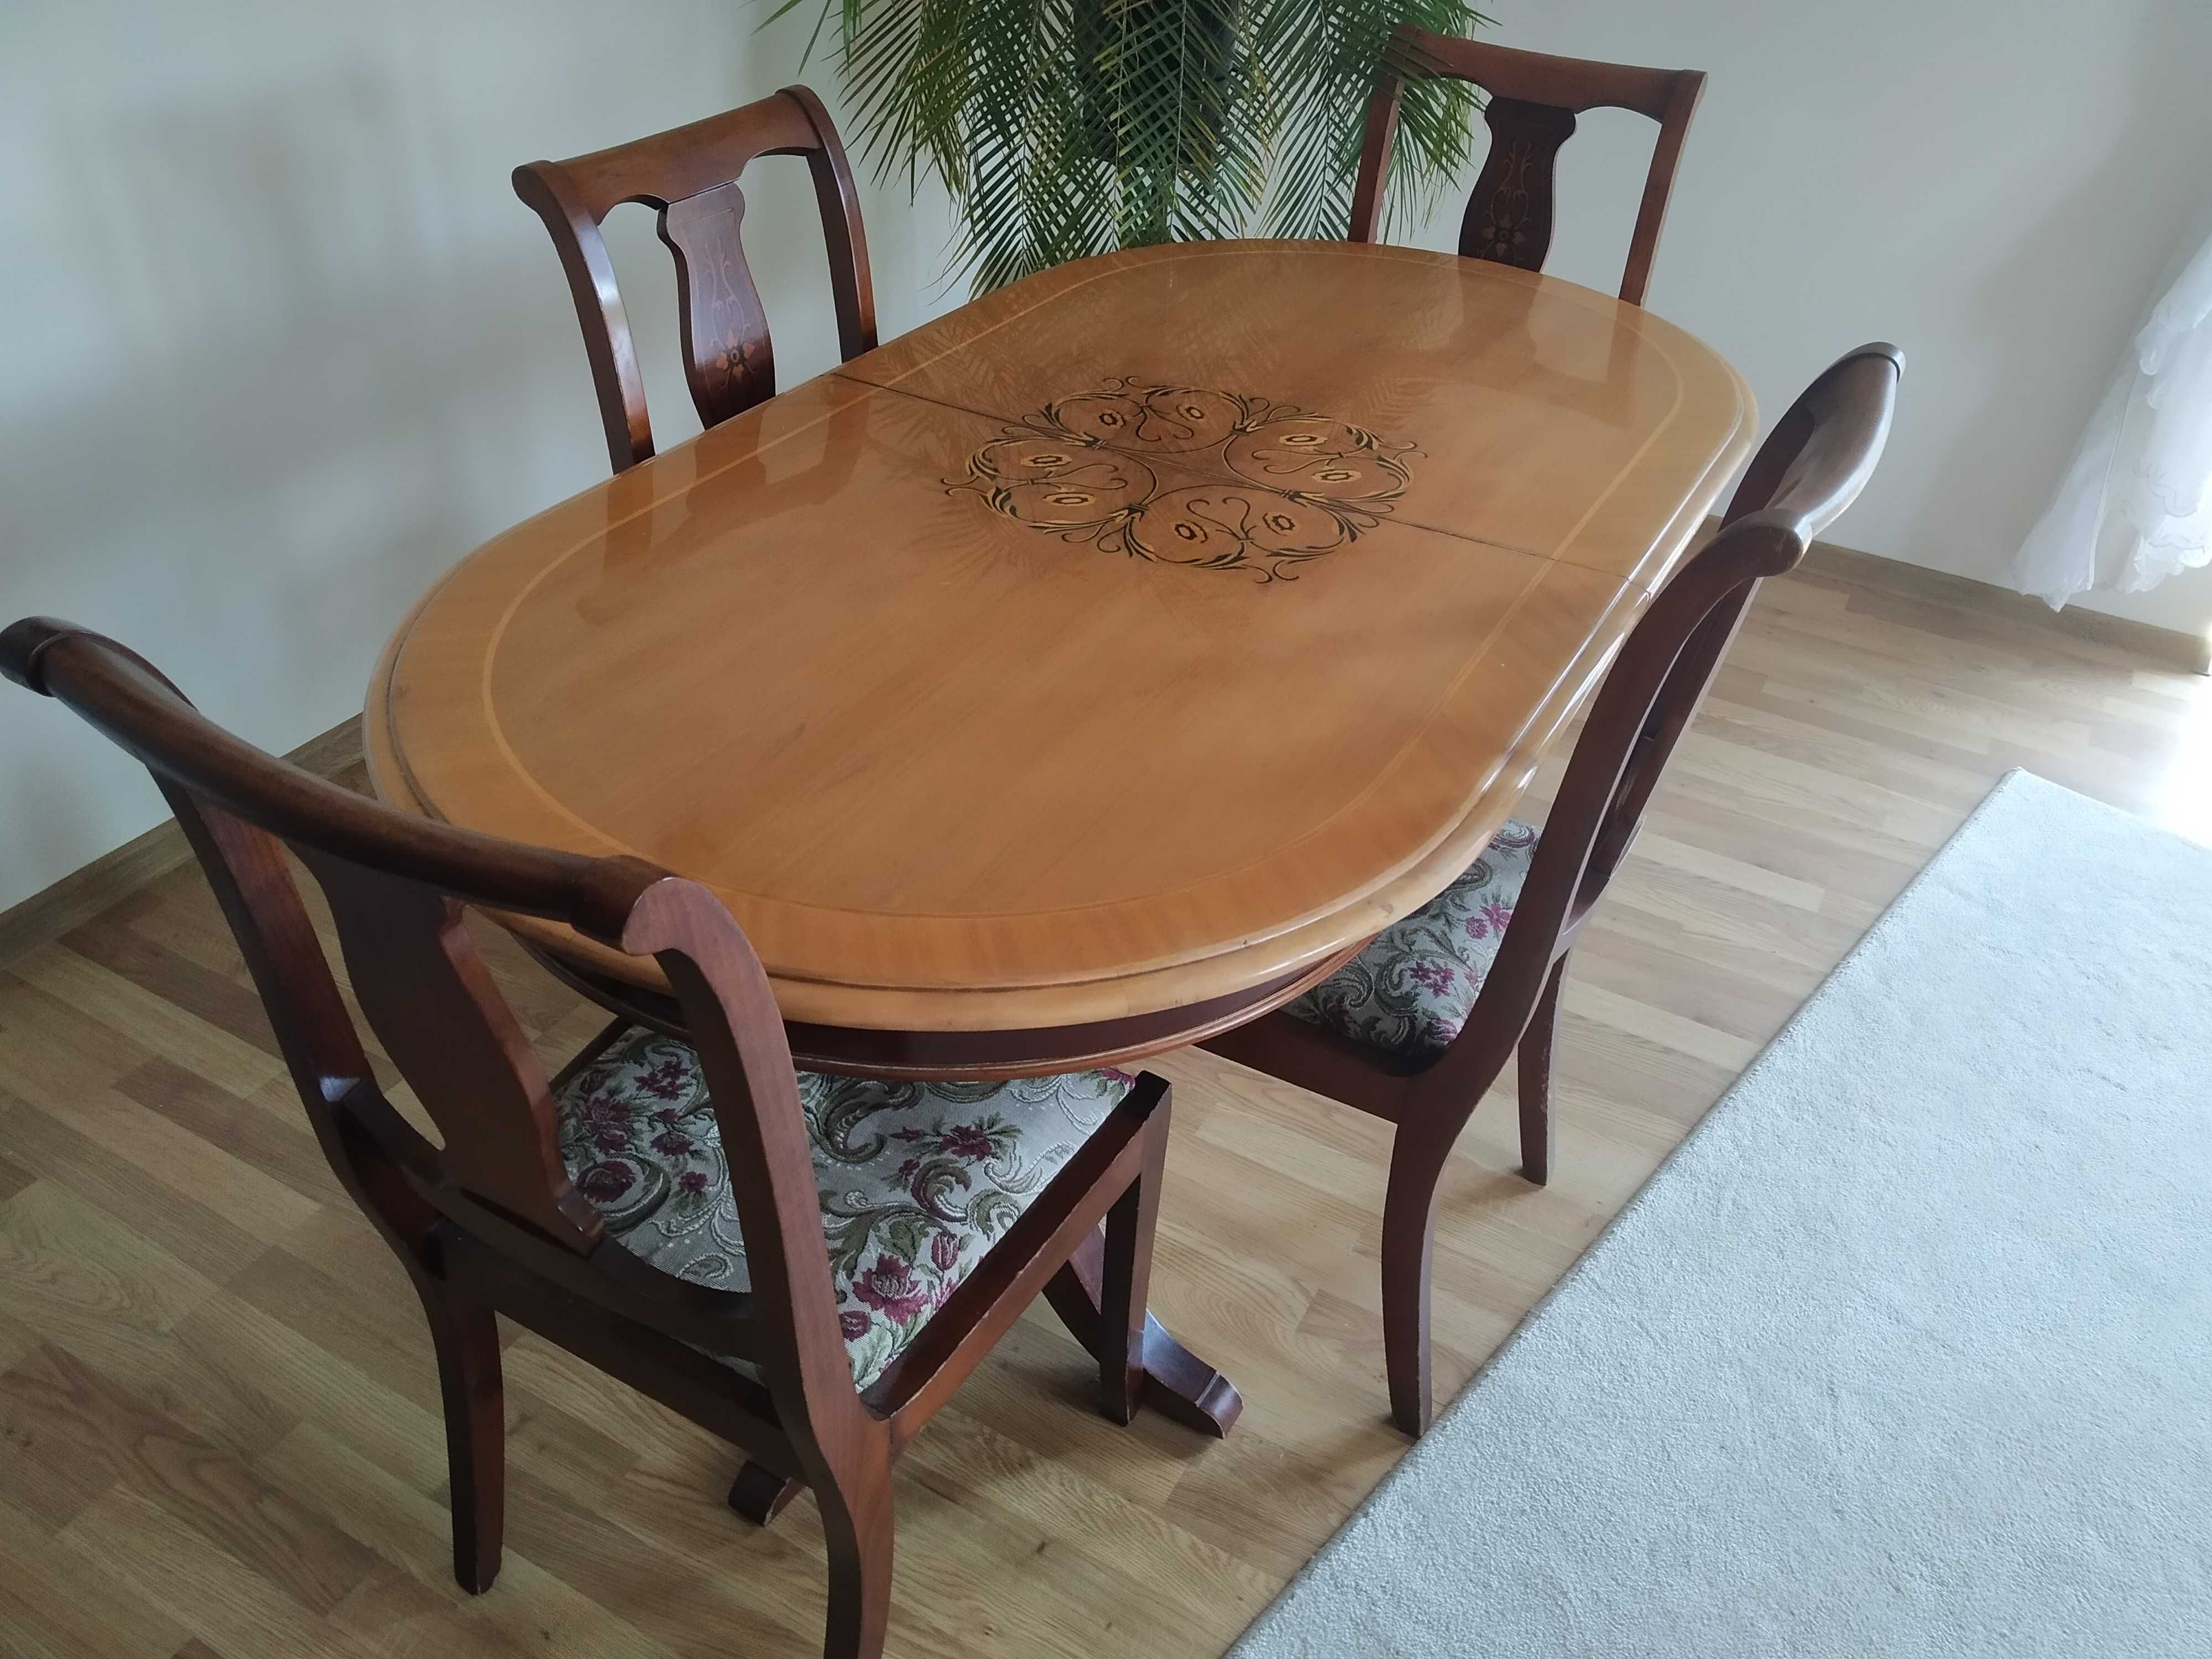 Komplet mebli komoda ława stół krzesła